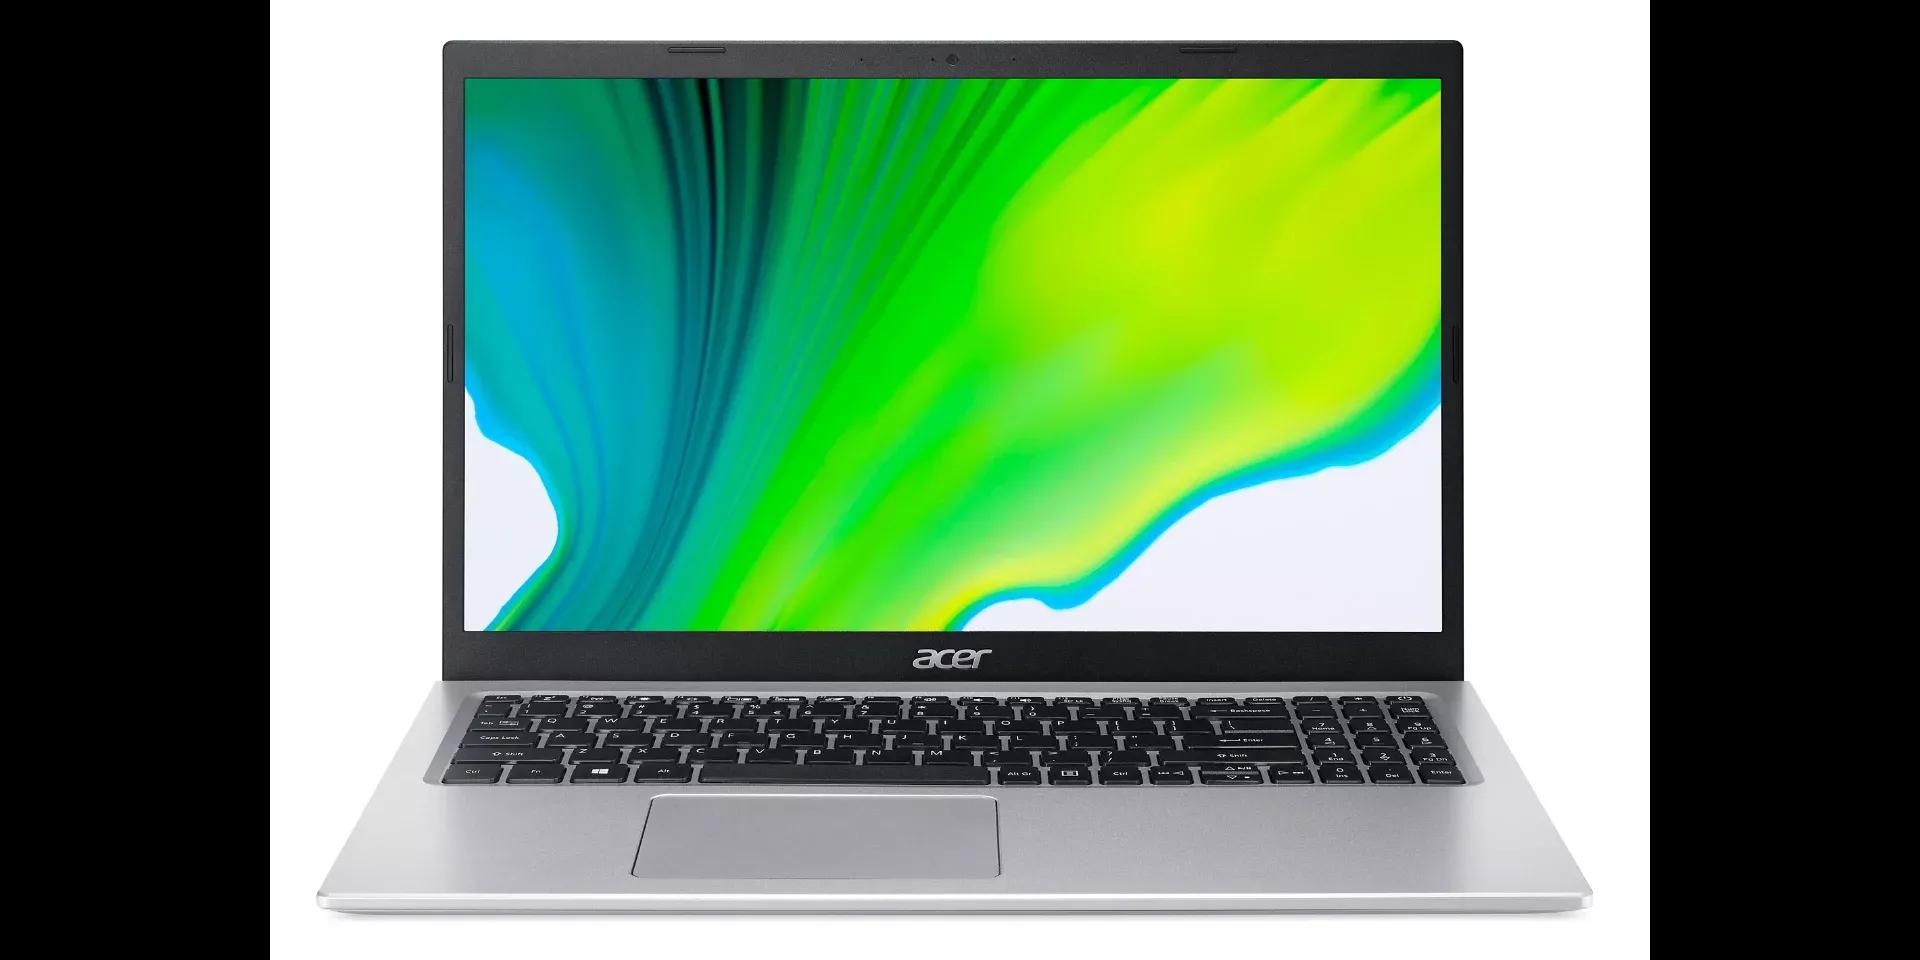 Acer Aspire 5 2021 Ryzen 7 5700U / 8GB RAM / 256GB SSD / 1TB HDD / 15.6" FHD Display / Backlight Keyboard